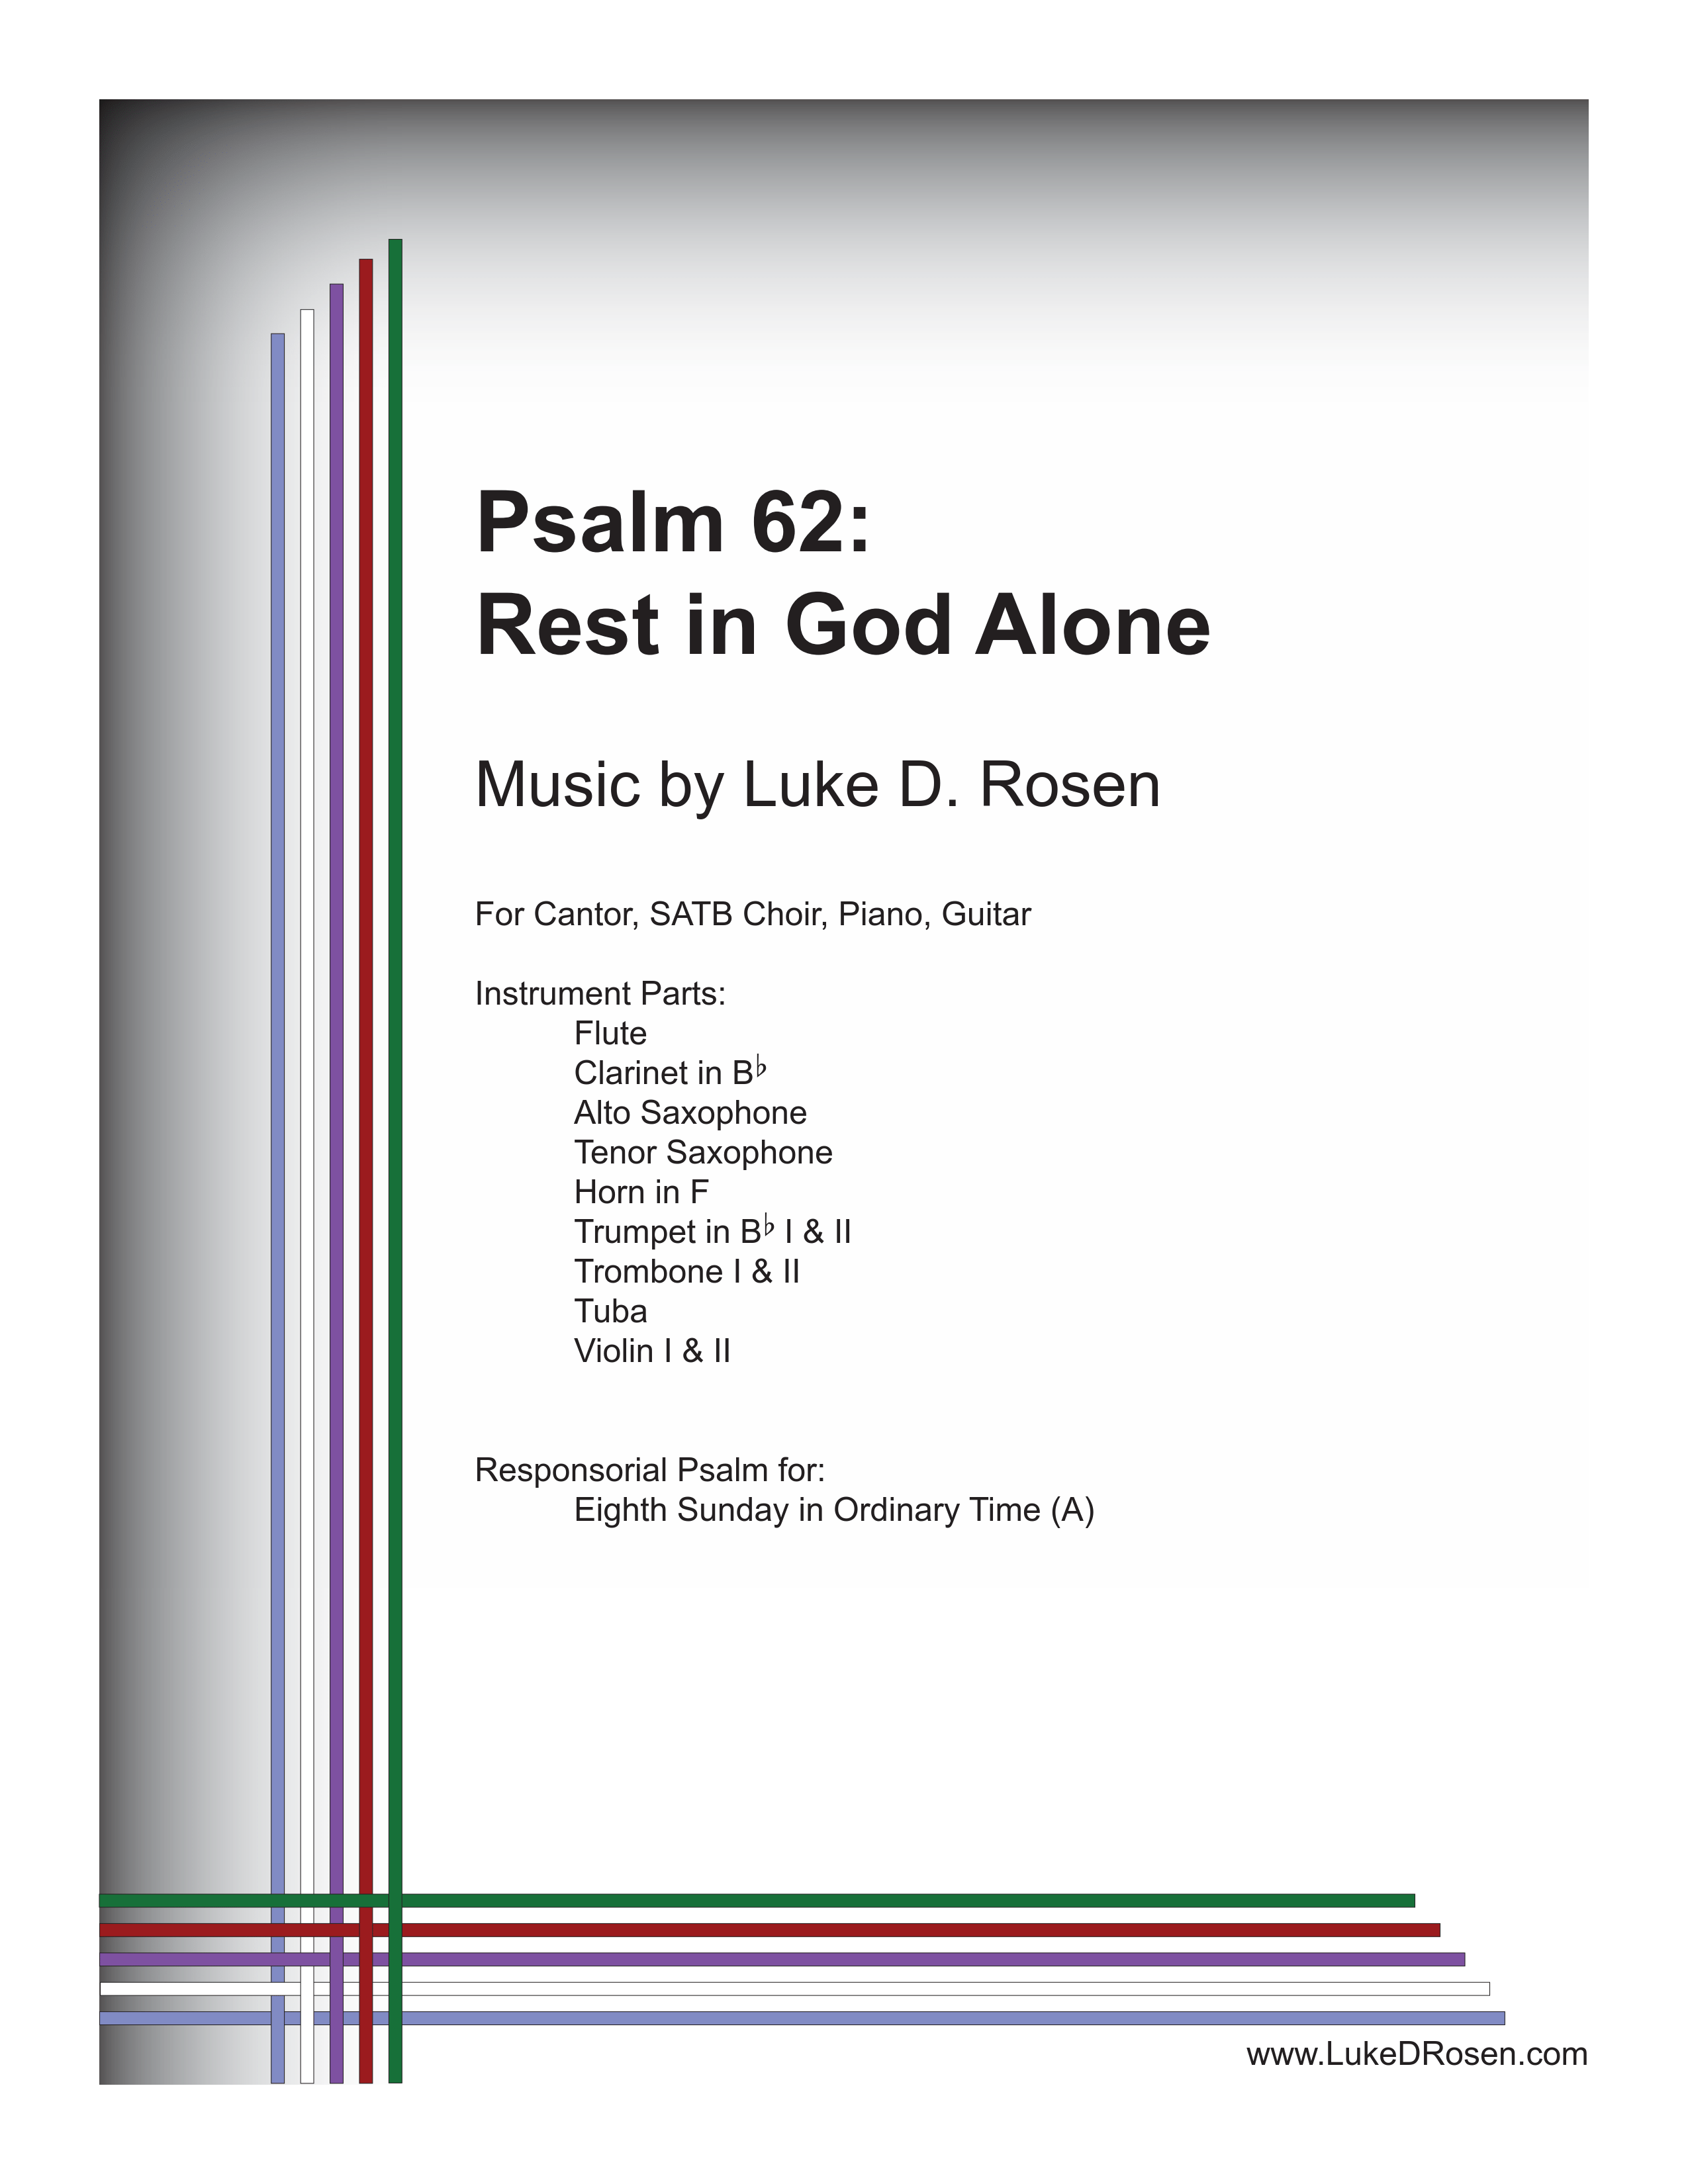 Psalm 62 – Rest in God Alone (Rosen)